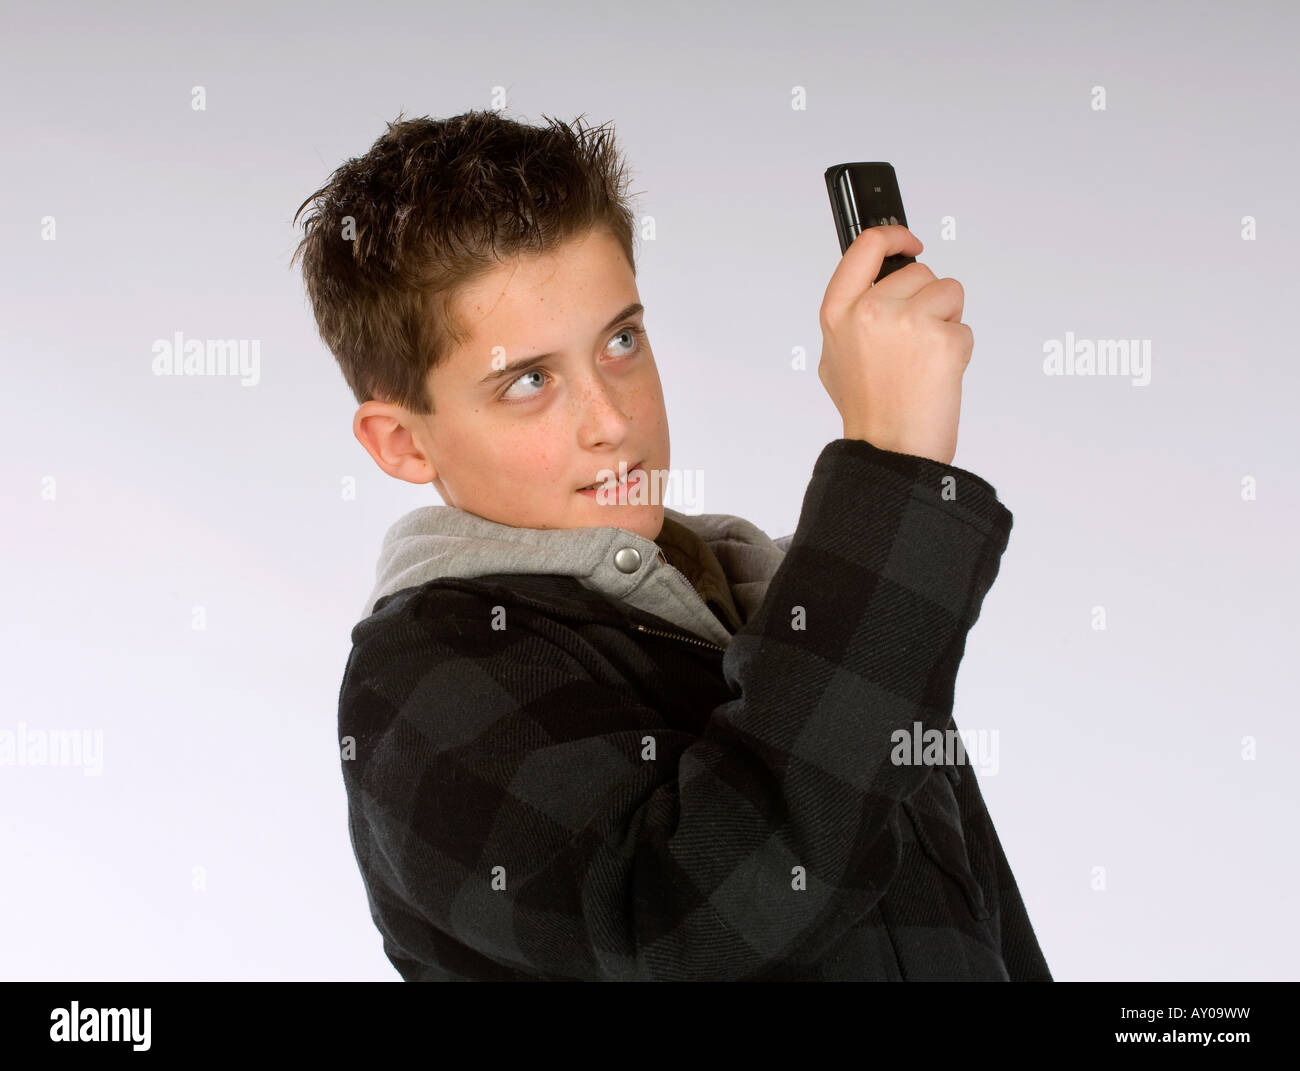 Ein Teenager mit Kamera-Handy um zu fotografieren. Bild von Jim Holden Stockfoto